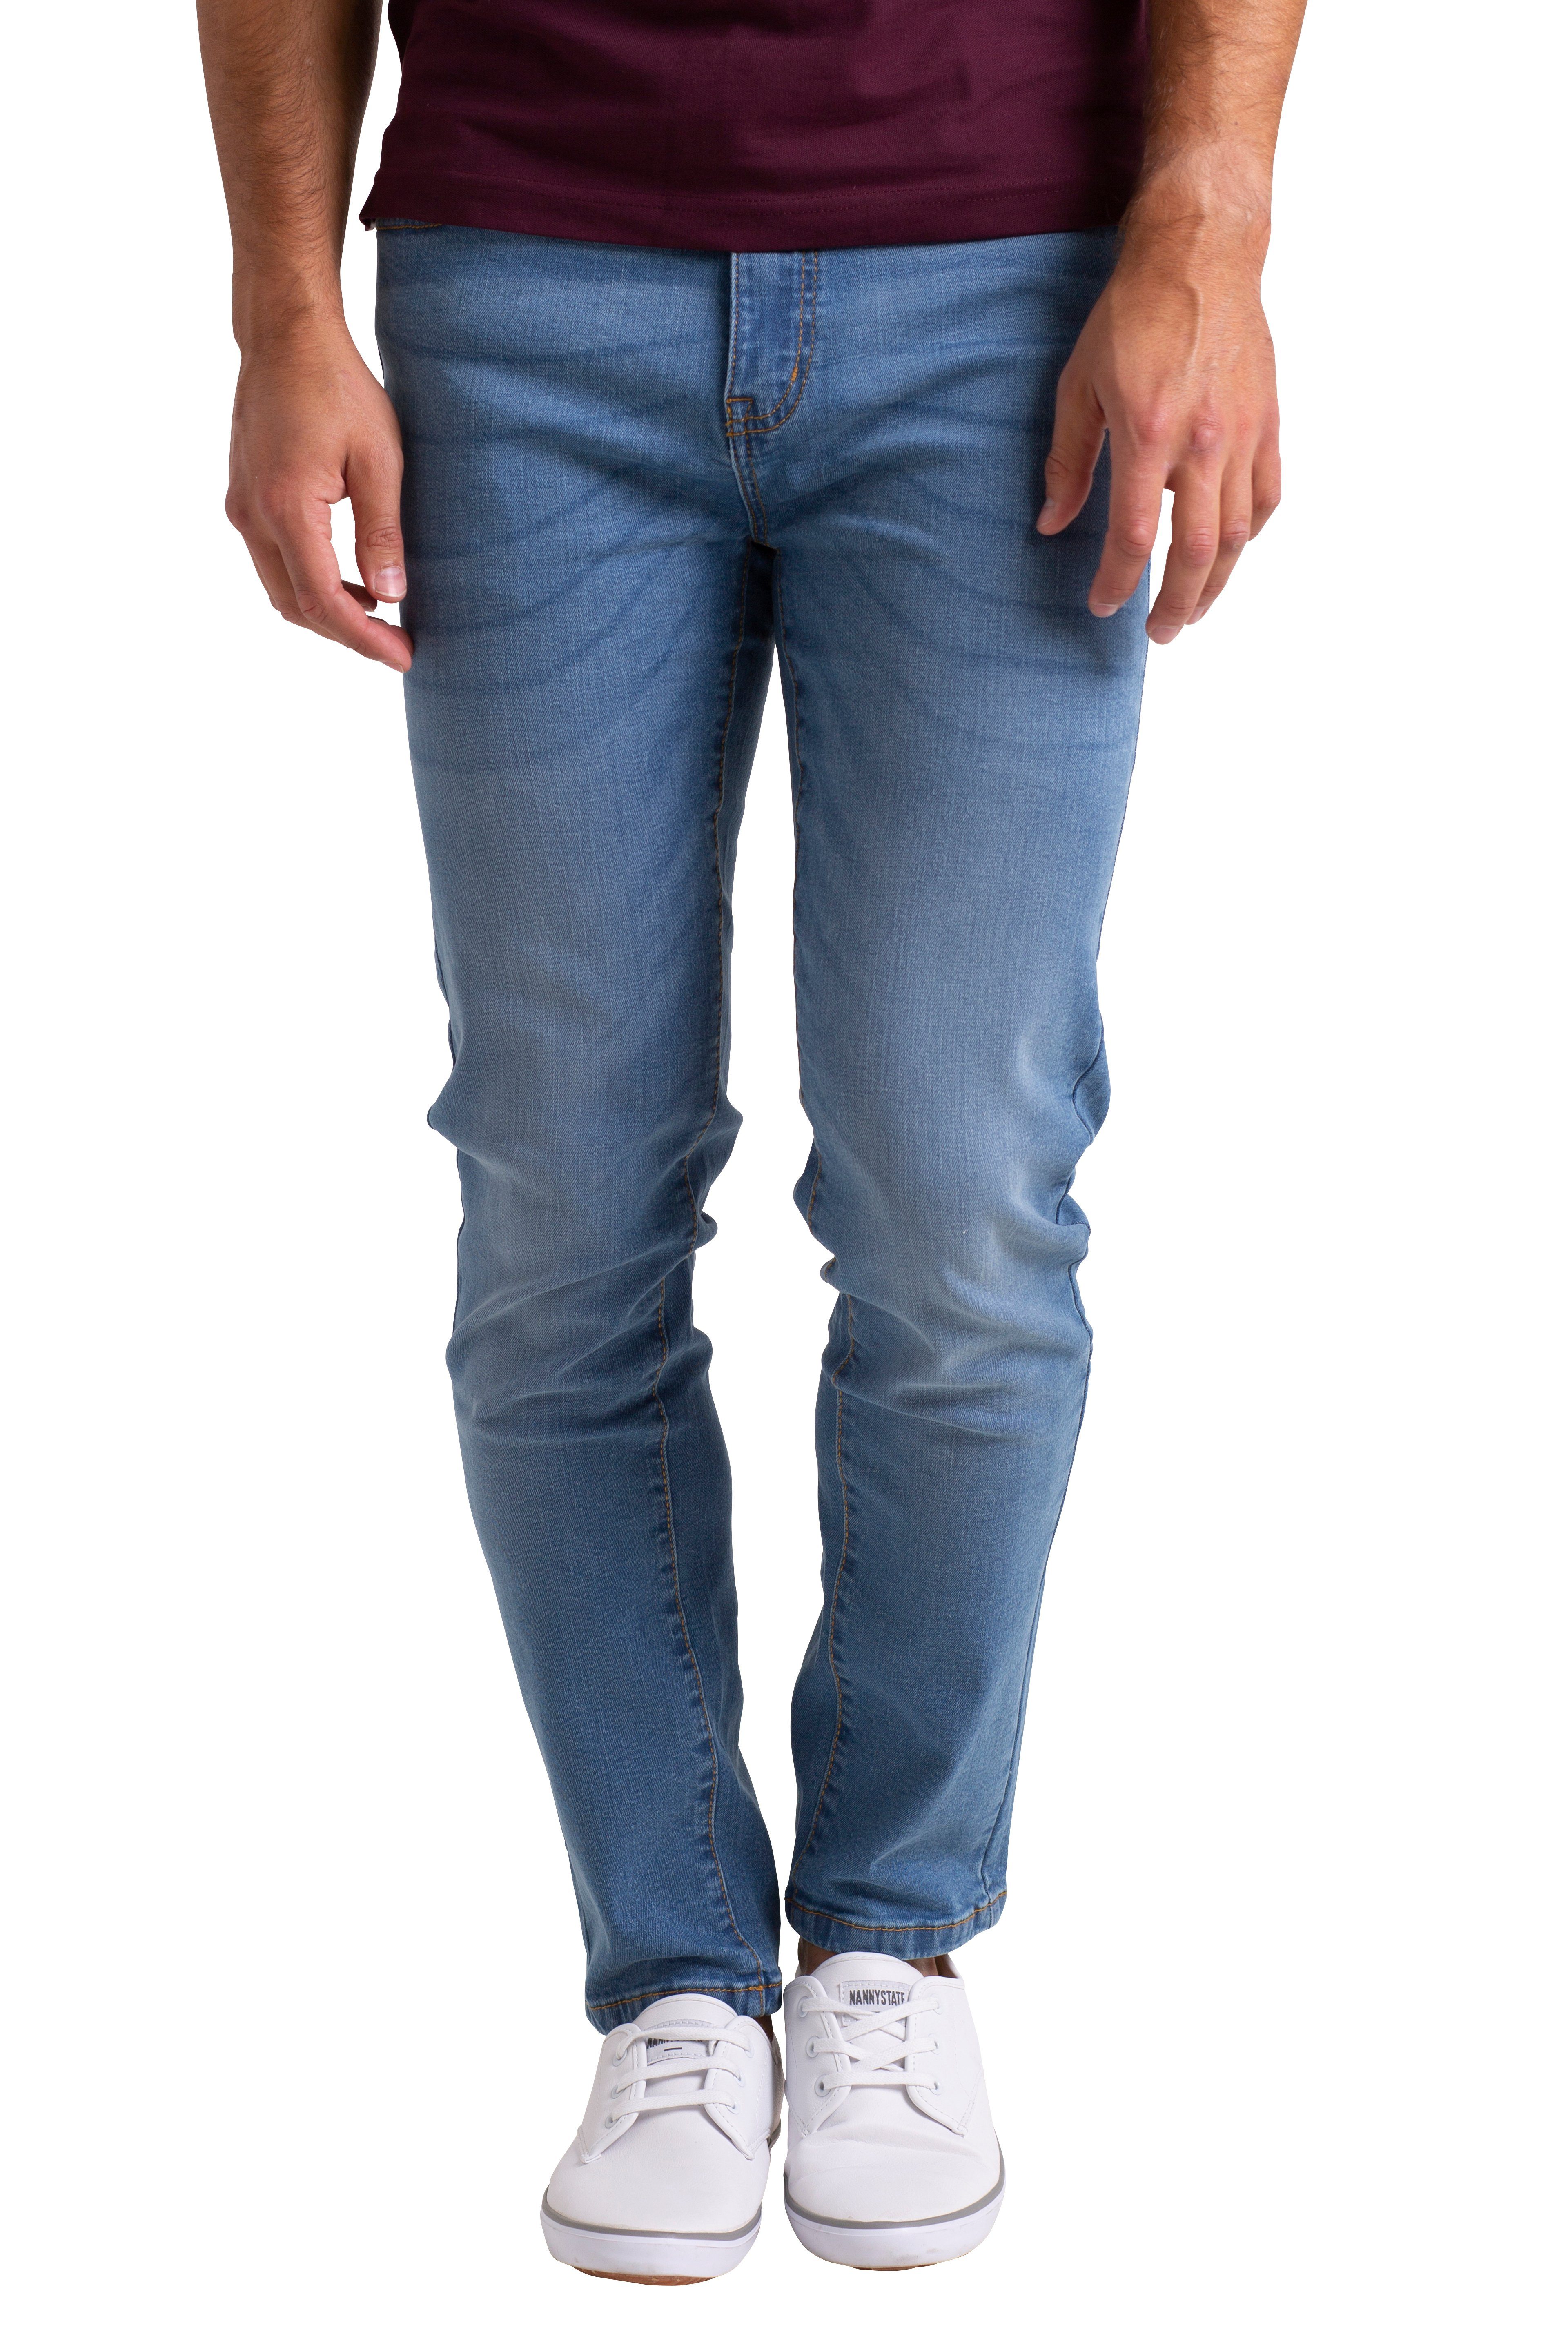 Jeans Denim BlauerHafen Hellblau strecken Dünn Slim-fit-Jeans Hose Passform Herren Schlanke Denim Stretch